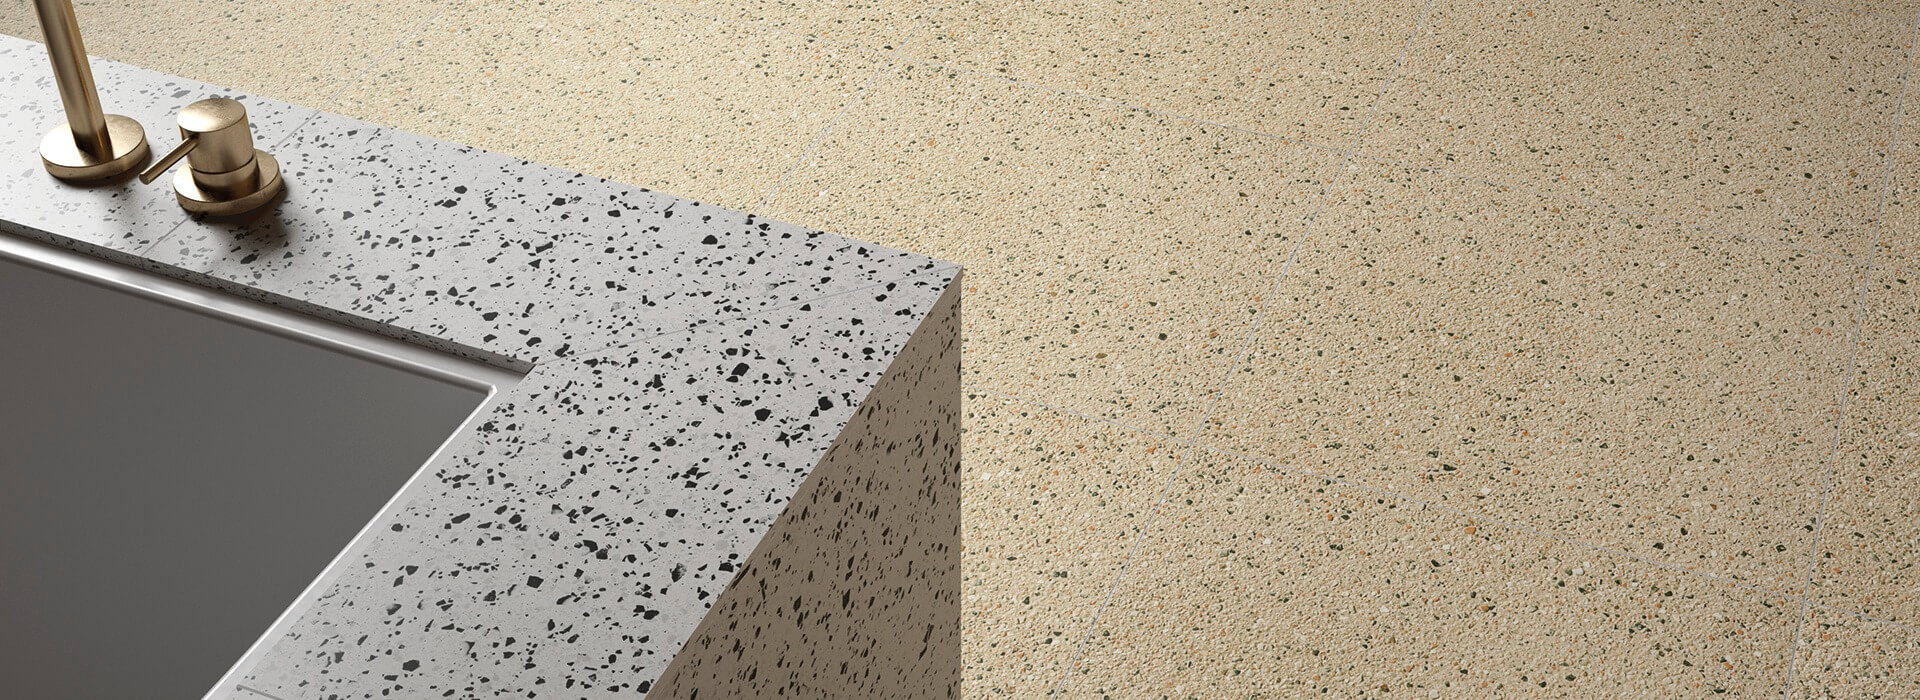 Podlaha z keramické dlažby Rialto beige